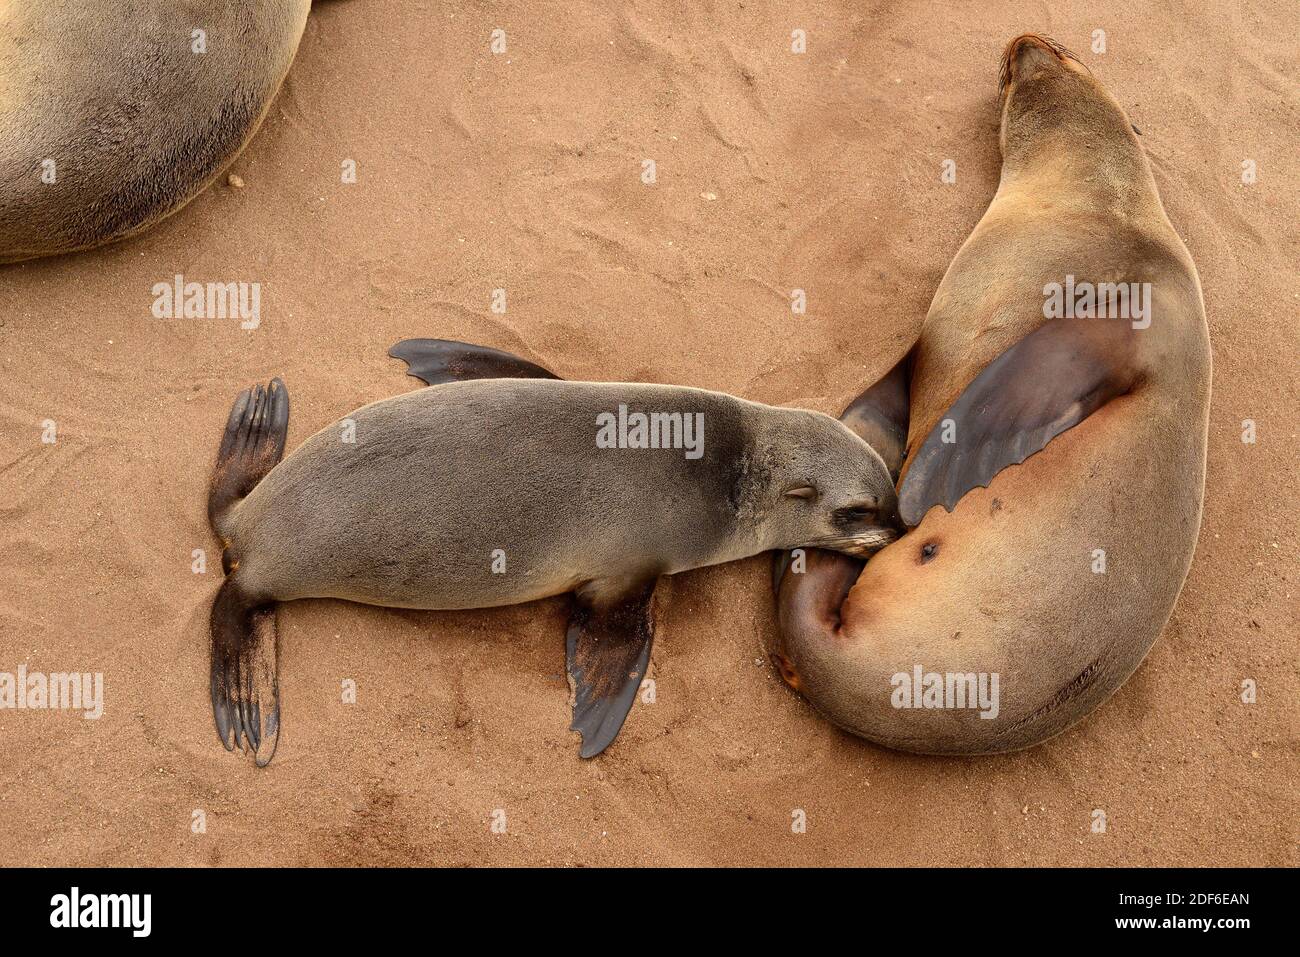 Sello de piel marrón (Arctocepalus pugillus pusillus). Hembra succionando su cría. Colonia de leones marinos en Cape Cross, Namibia. Foto de stock